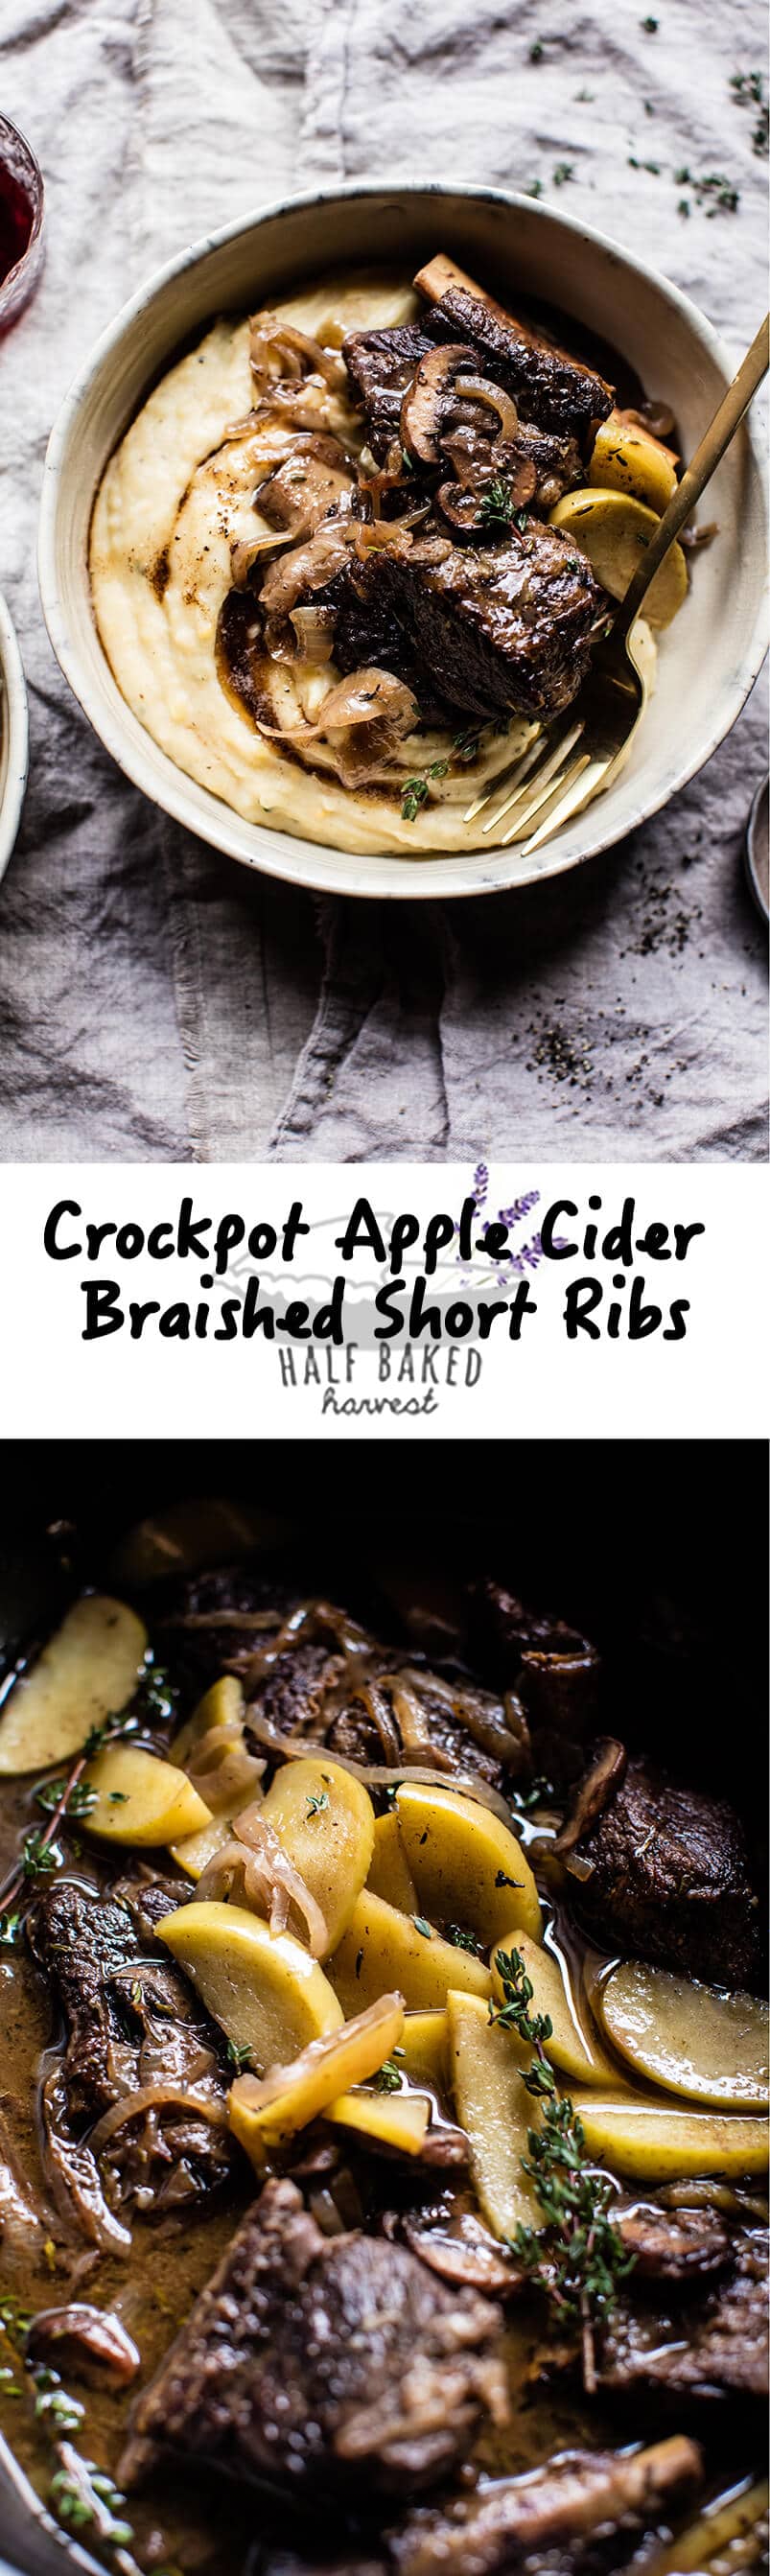 Crockpot Cider Braised Short Ribs with Sage Butter Mashed Potatoes | halfbakedharvest.com @hbharvest